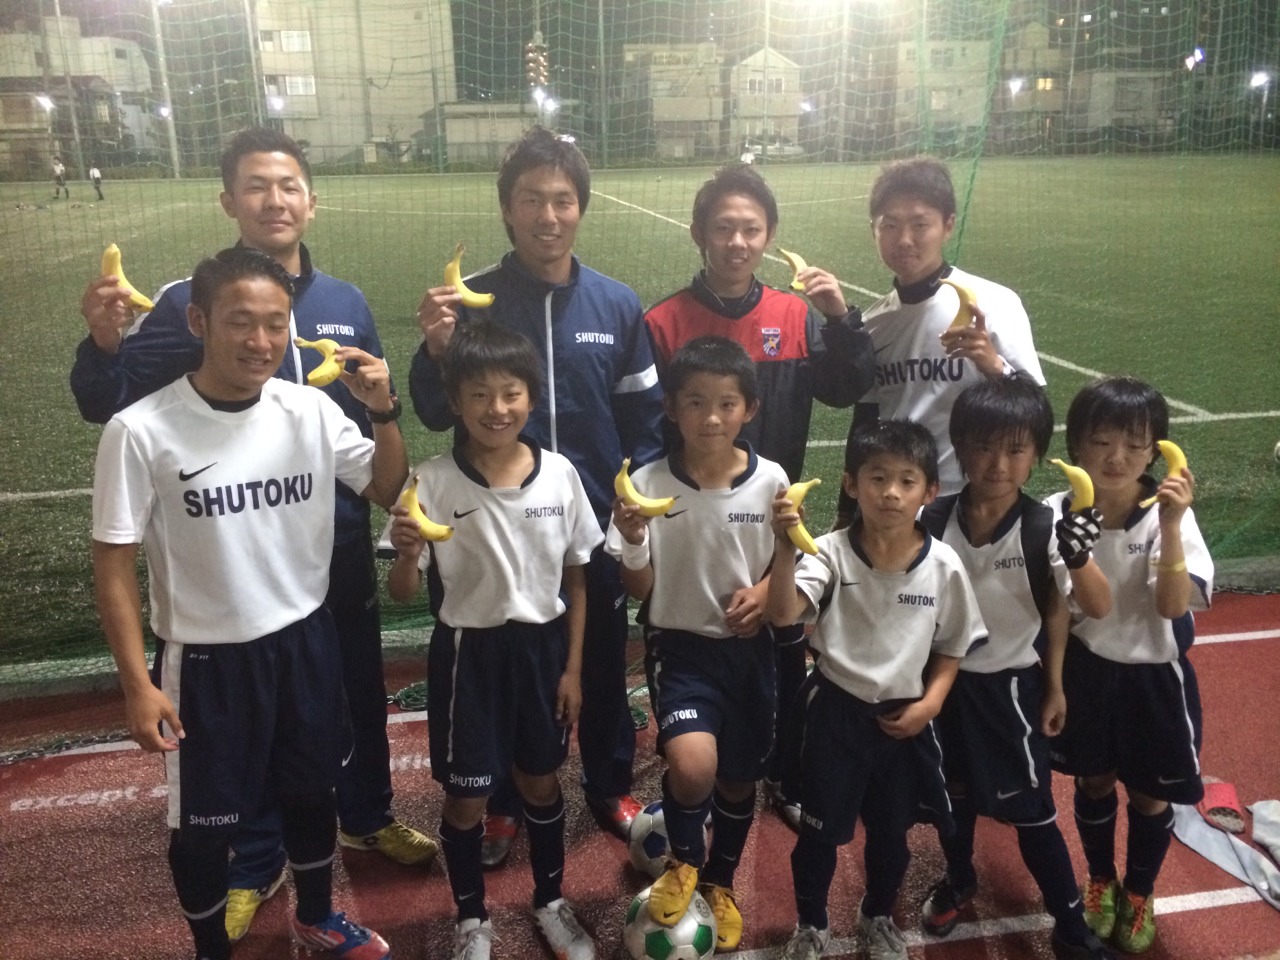 修徳fc ジュニア選手コース 幼児 小学生のサッカースクール 14 5月